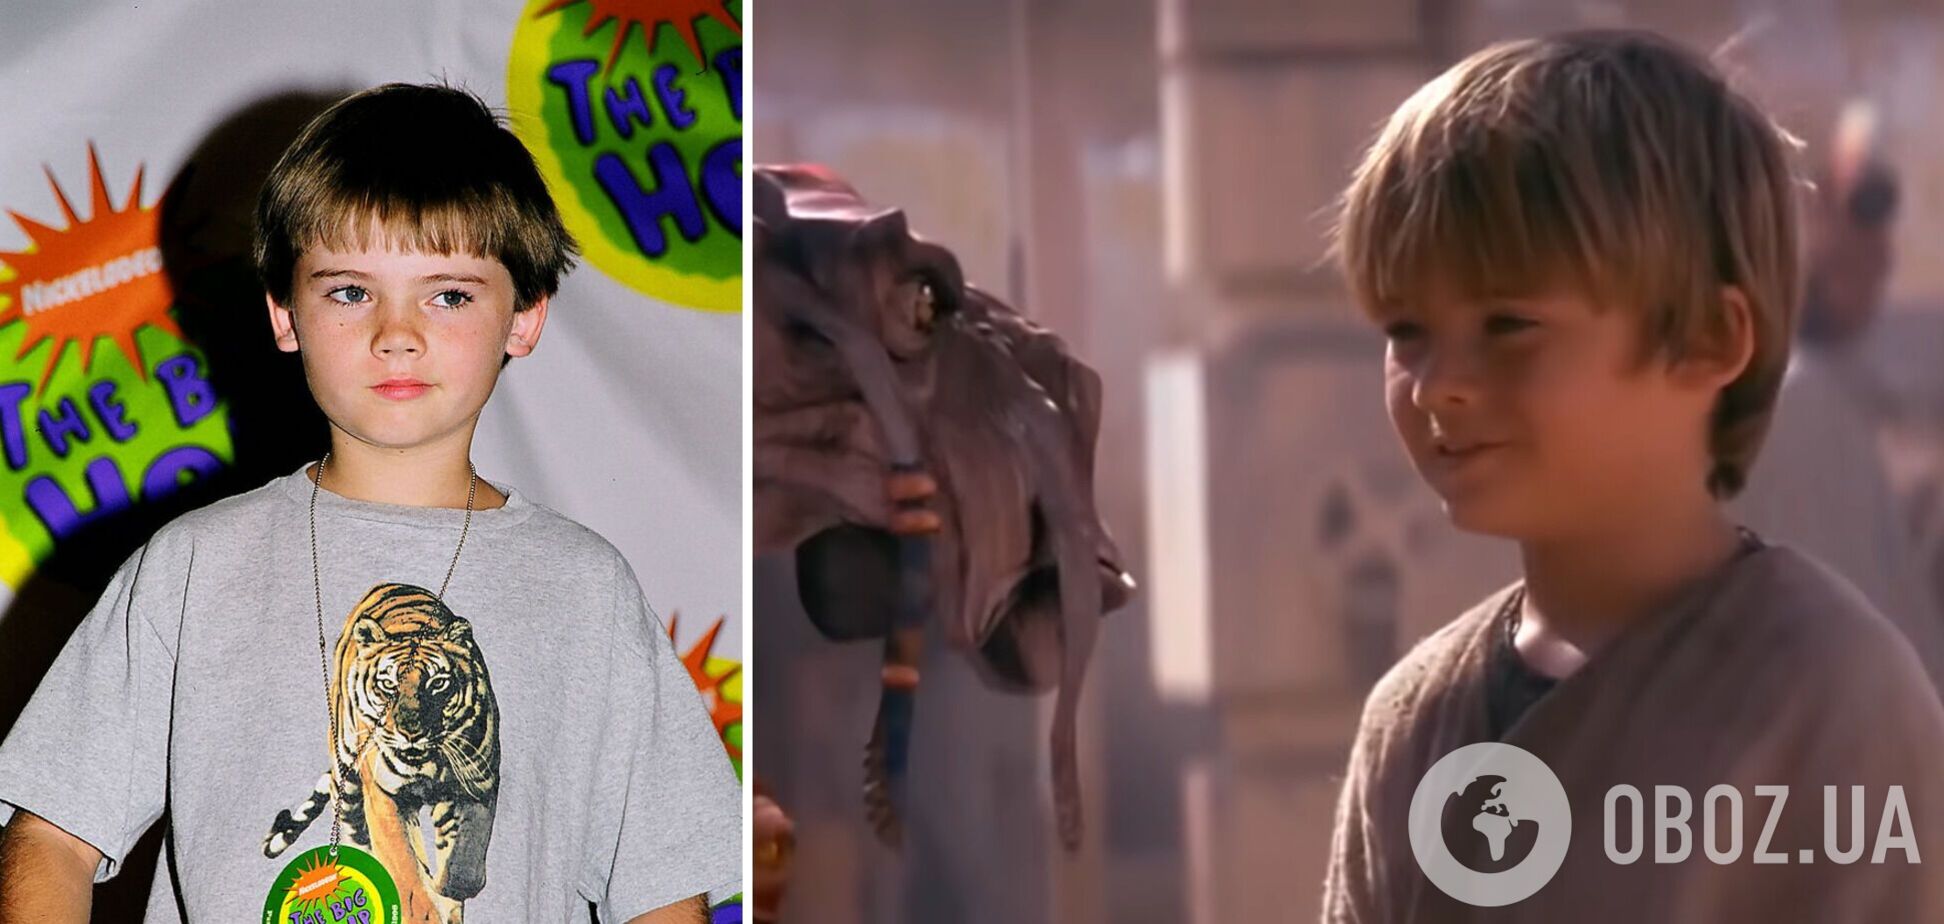 Одна из величайших ролей в истории кино 'уничтожила' 9-летнего мальчика: как сейчас живет юный Энакин Скайуокер из 'Звездных войн'